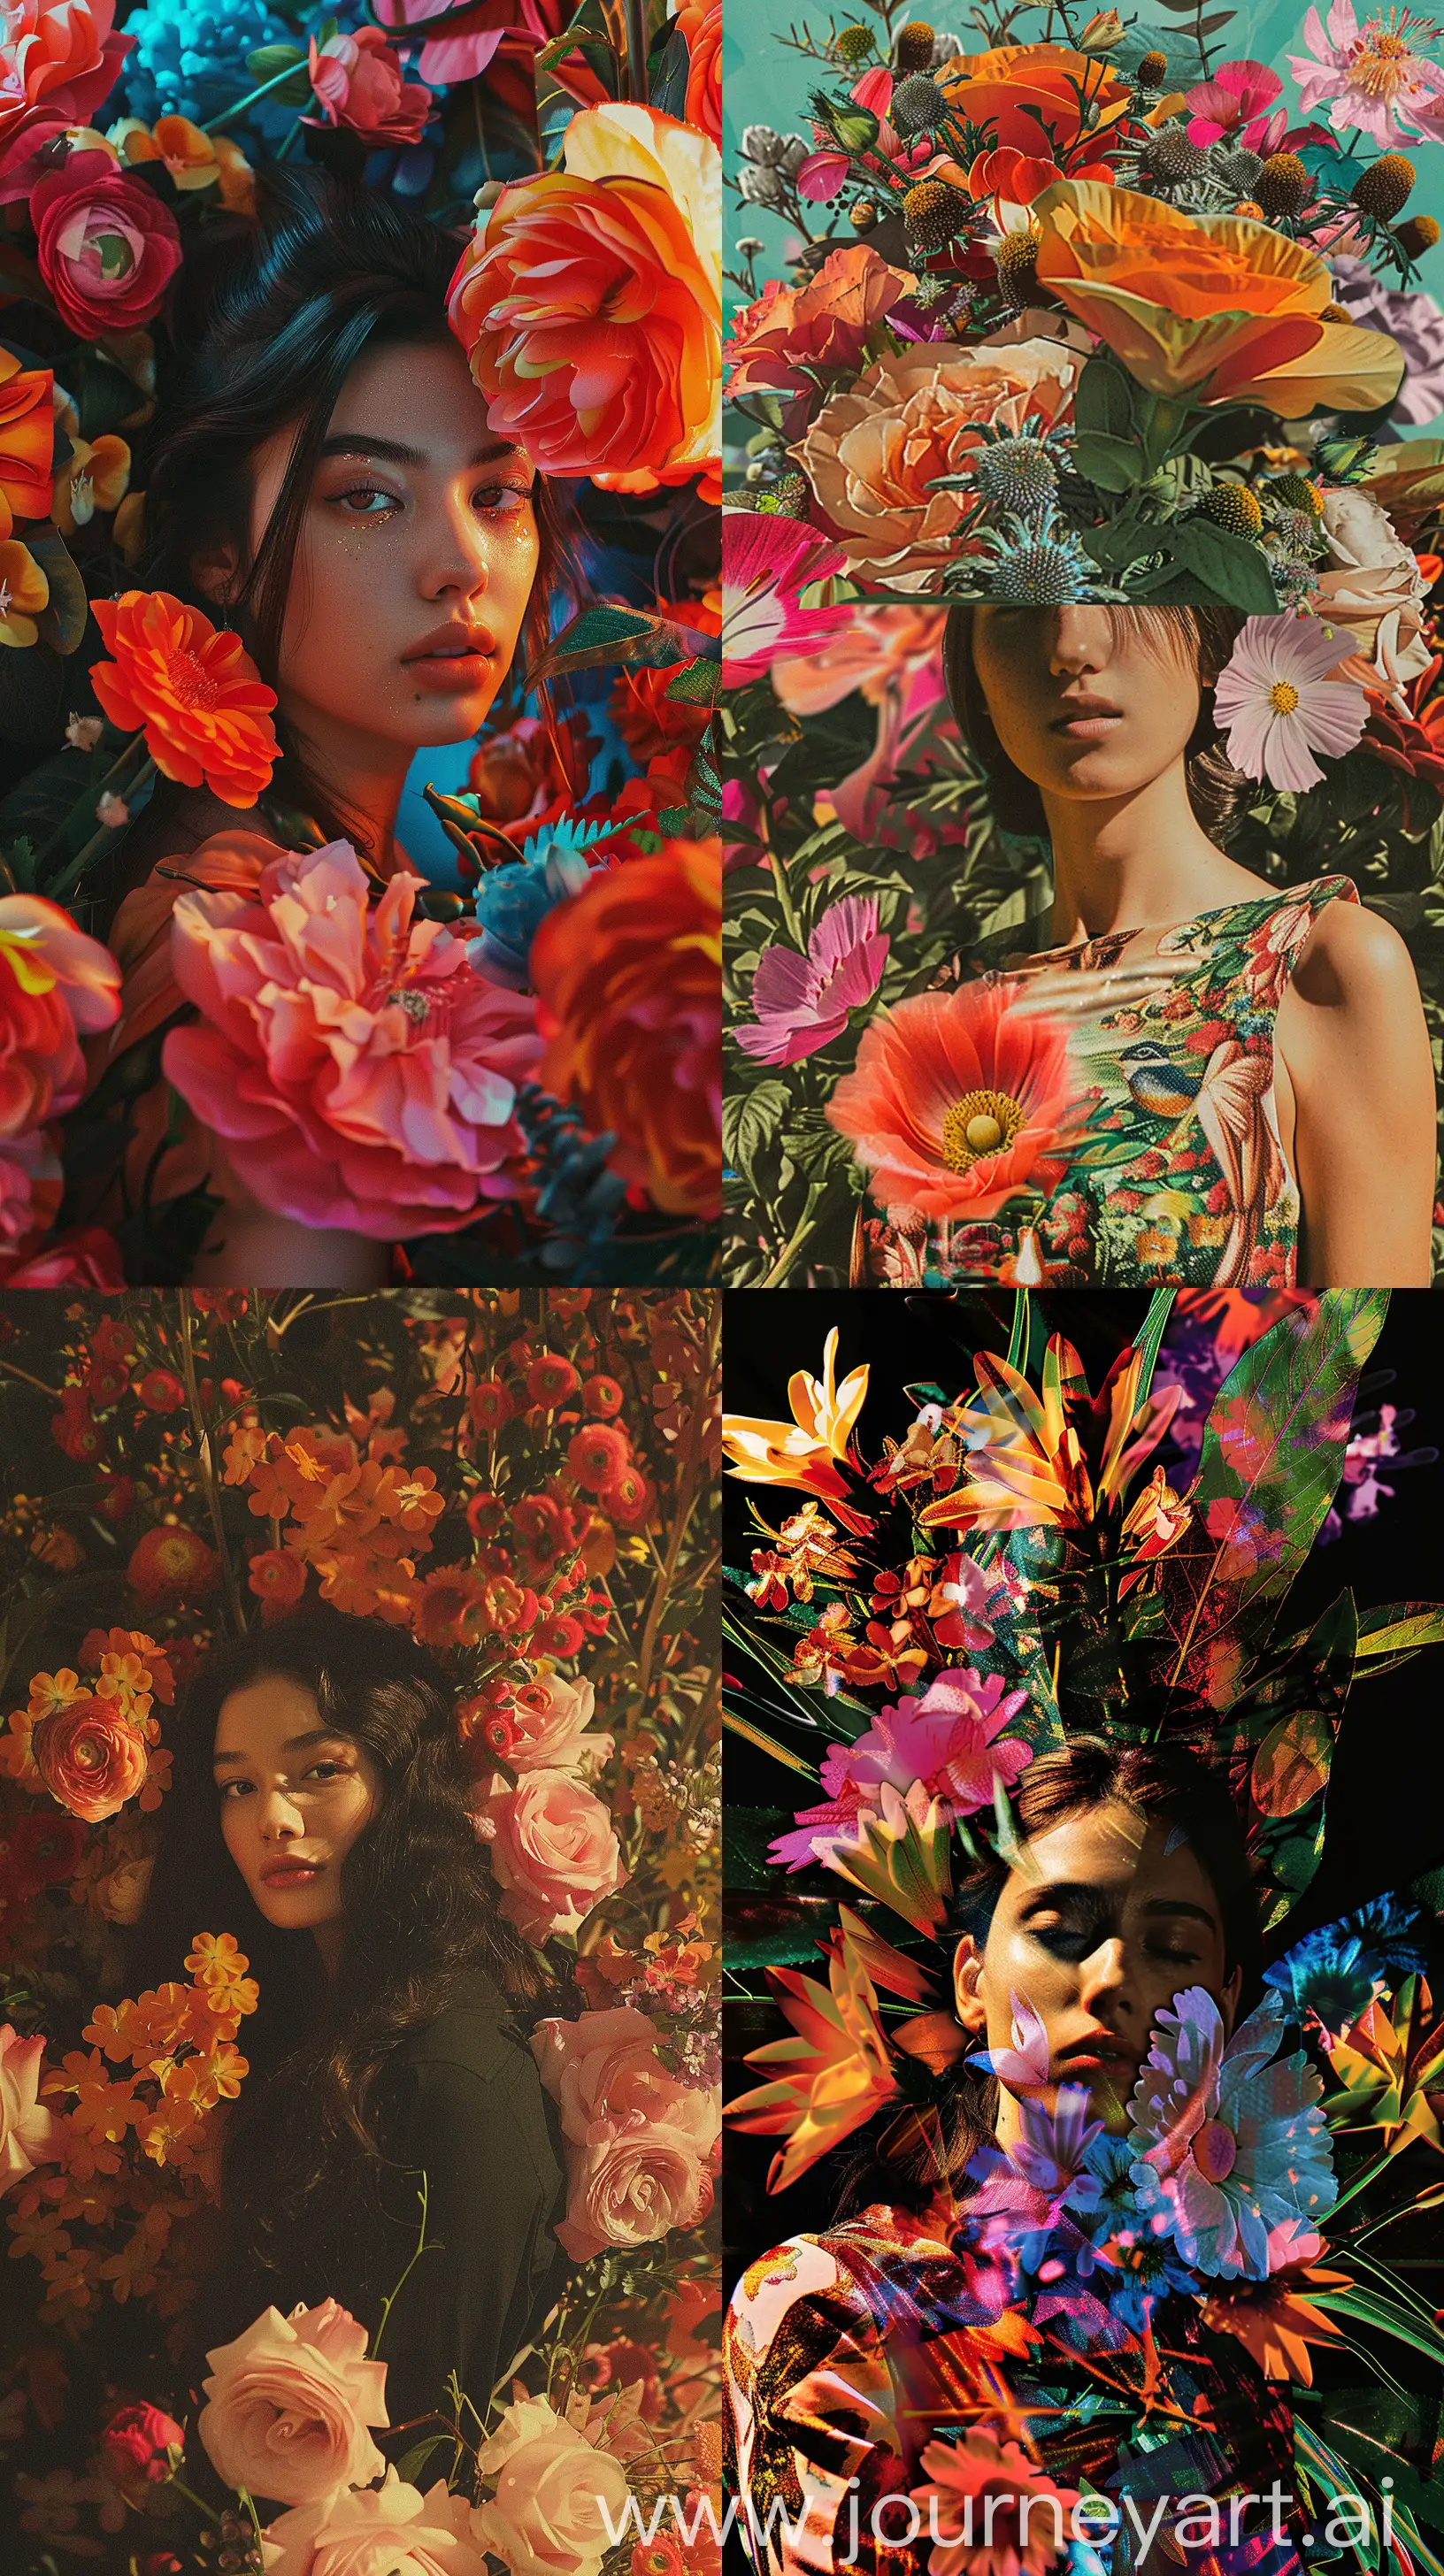 Vibrant-Collage-Portrait-Woman-Among-Flowers